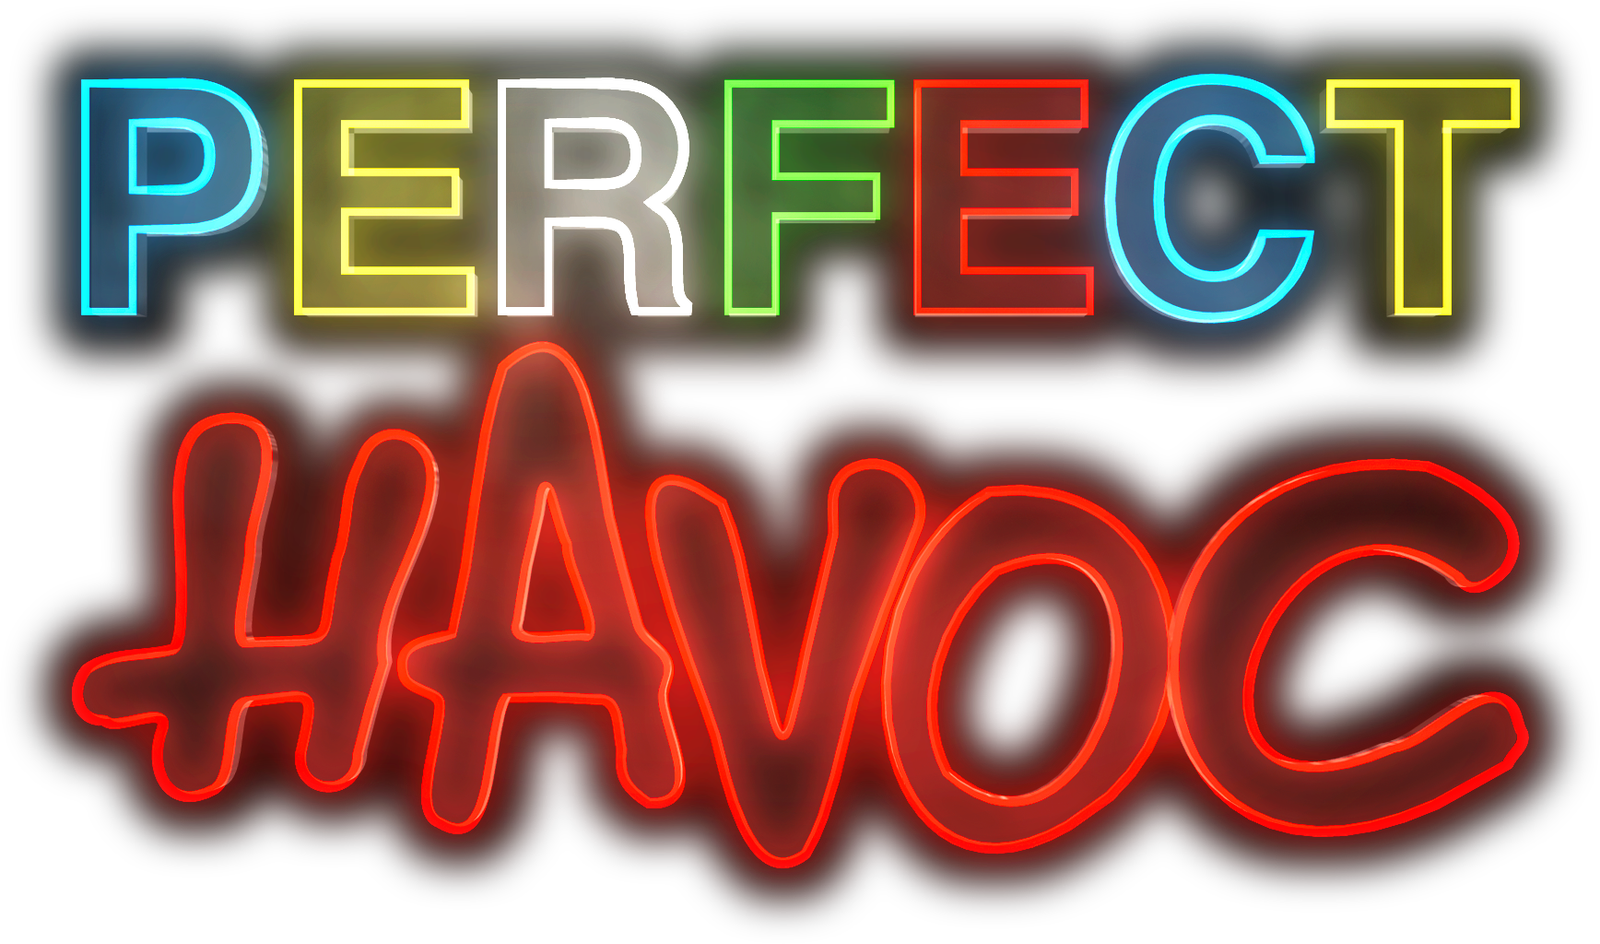 Perfect Havoc